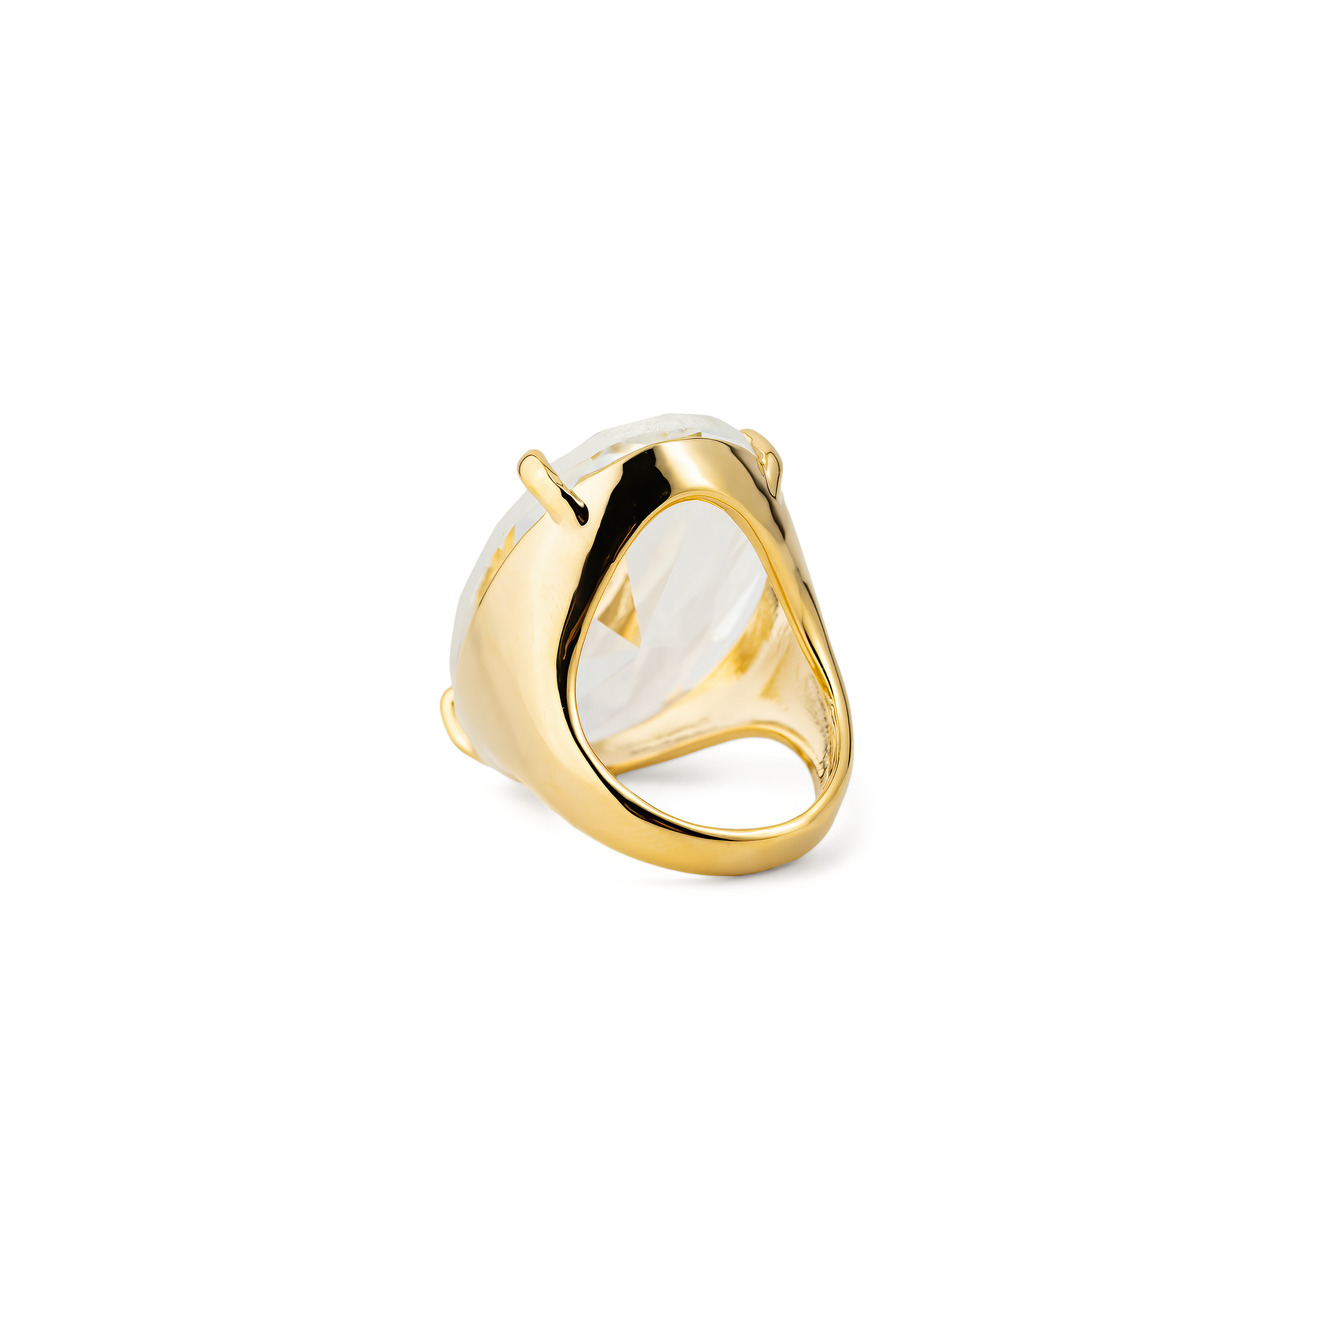 Herald Percy Золотистое кольцо с овальным кристаллом lisa smith золотистое кольцо с розовым кристаллом